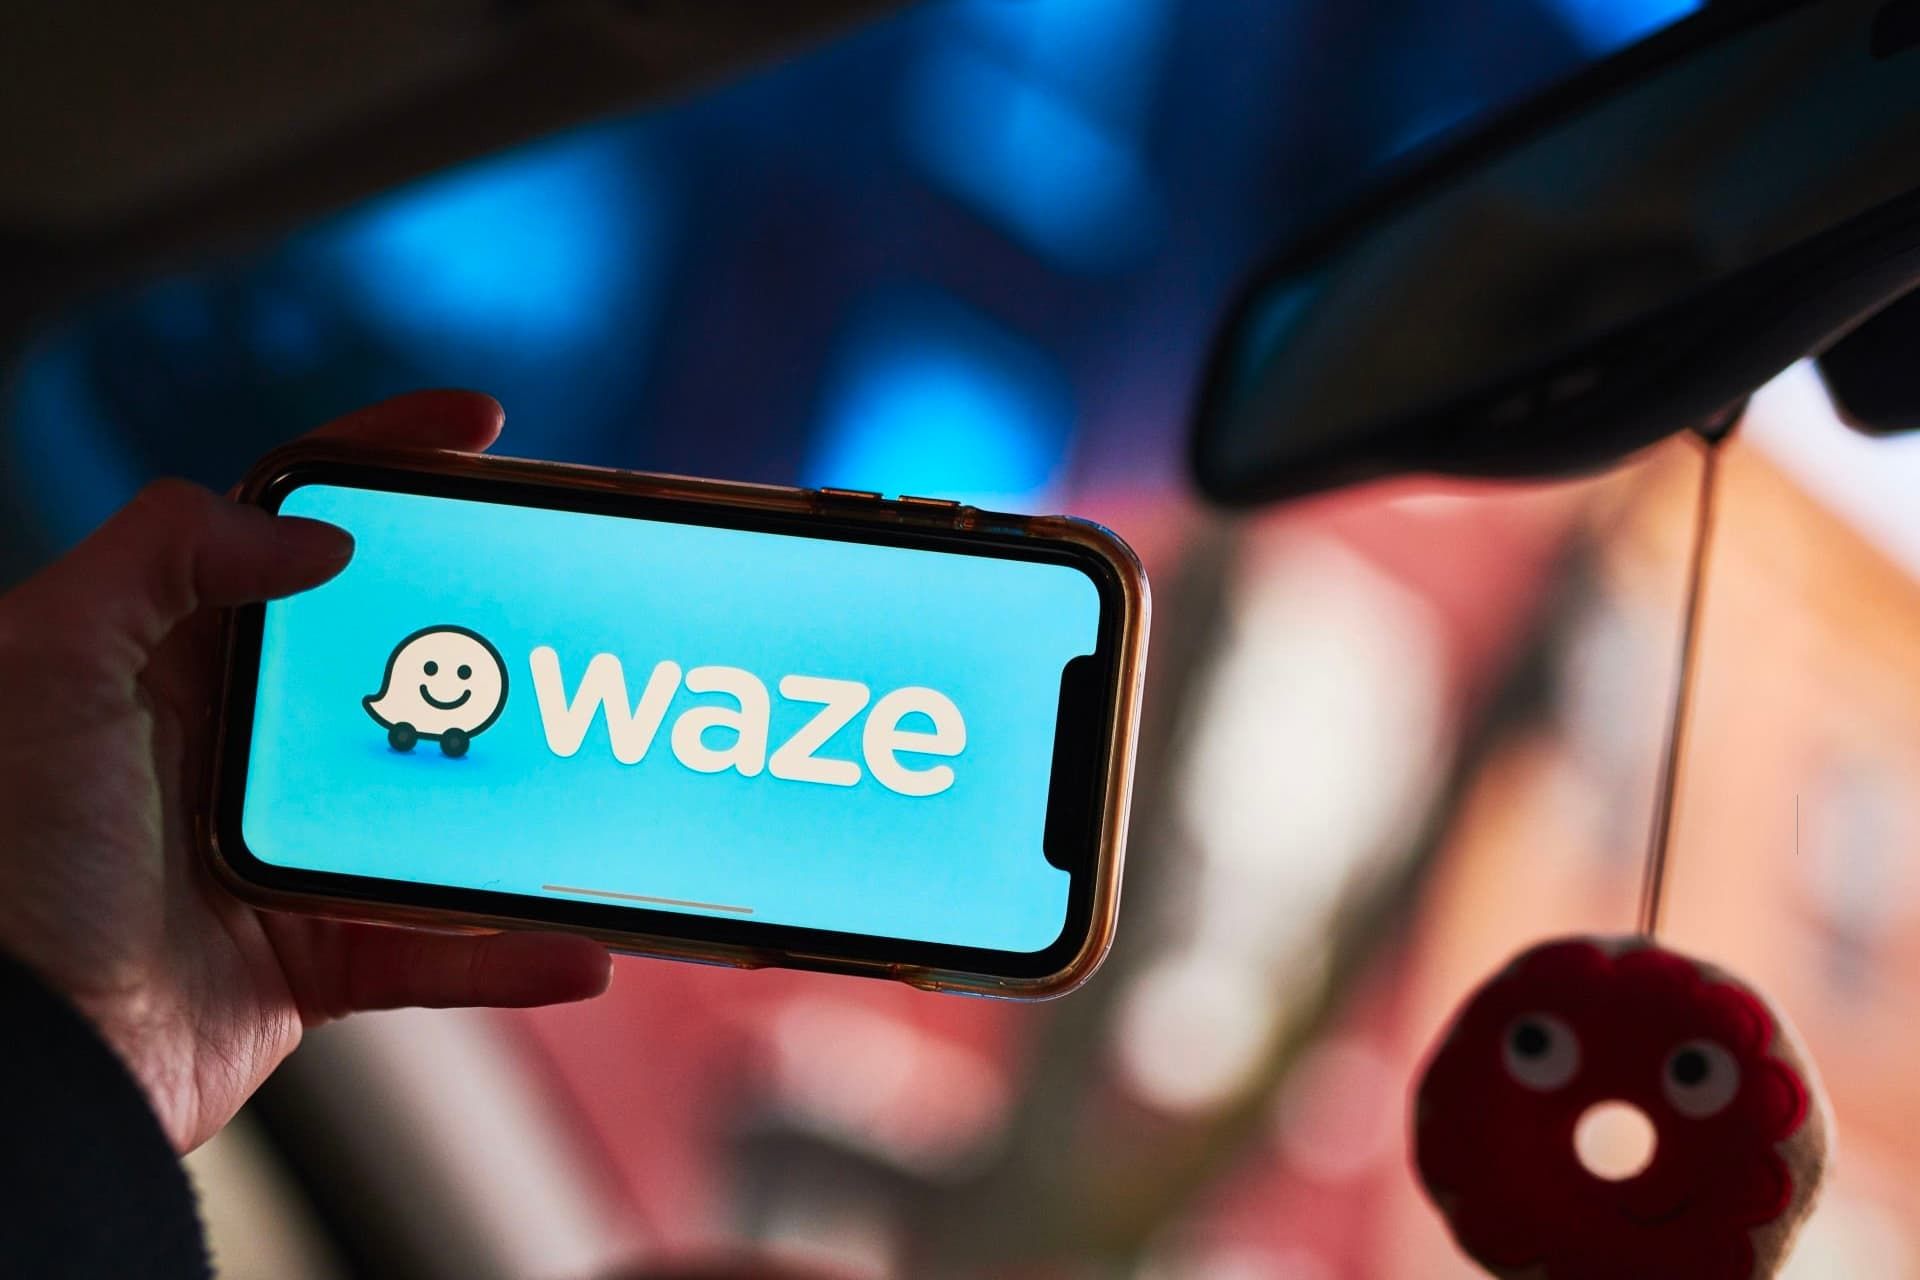 لوگو ویز / Waze روی نمایشگر آیفون در داخل خودرو